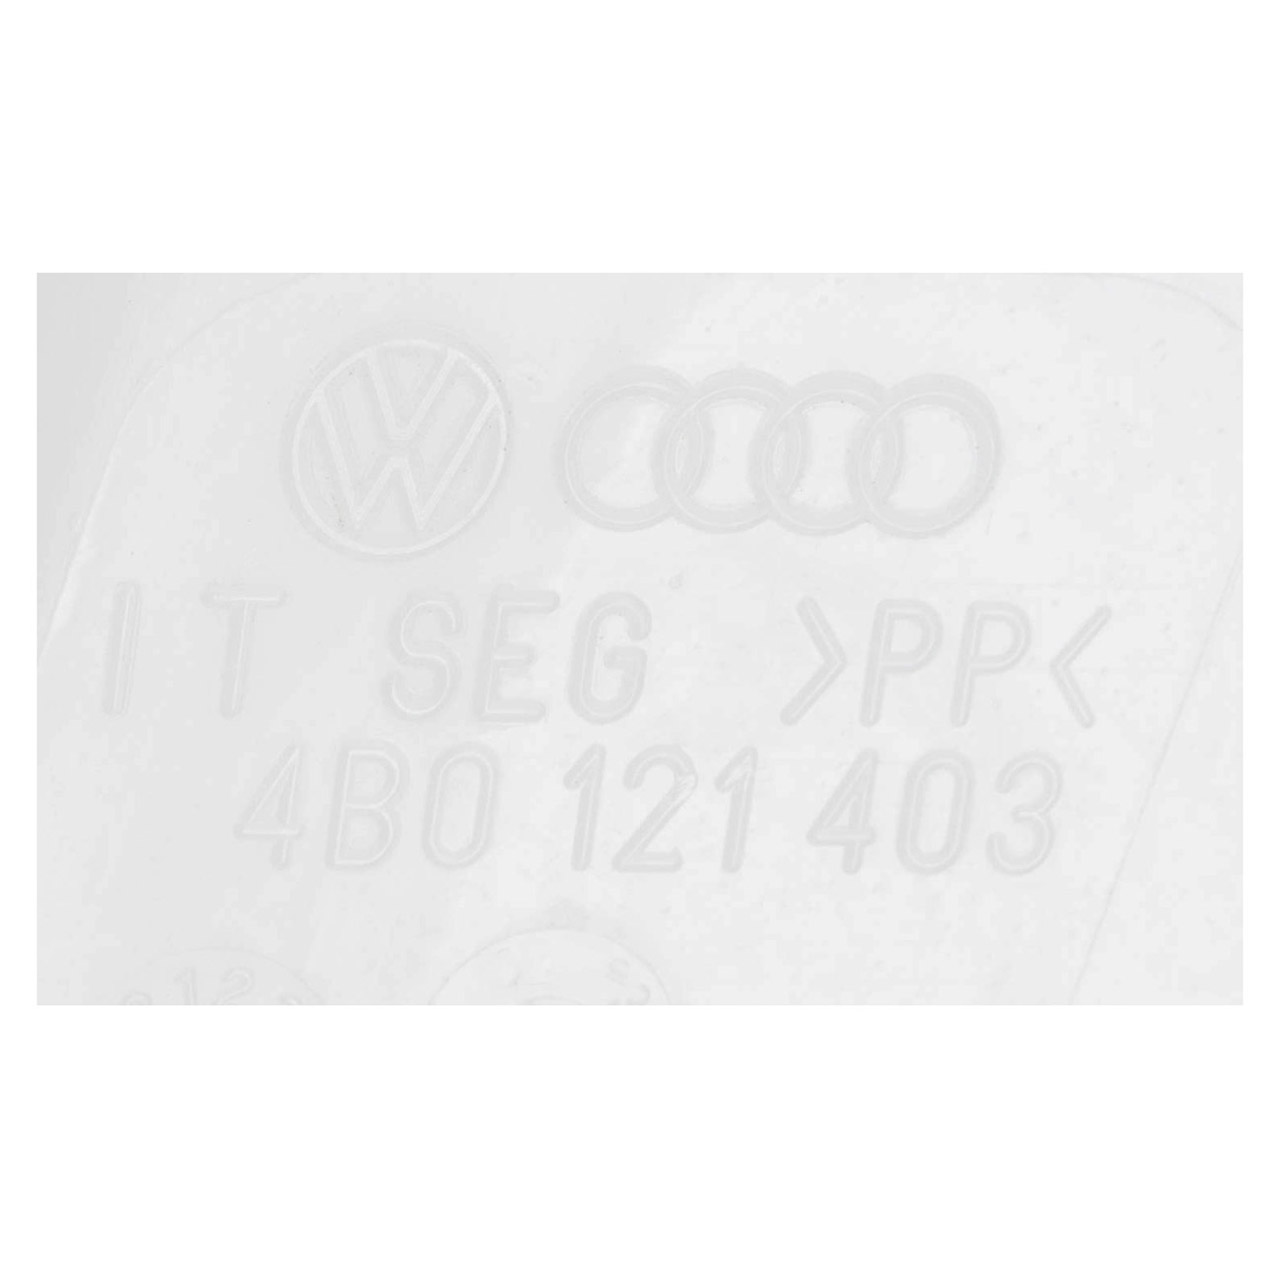 ORIGINAL VW Audi Skoda Ausgleichsbehälter Kühlmittel Passat B5 A4 B5 A6 Superb 4B0121403